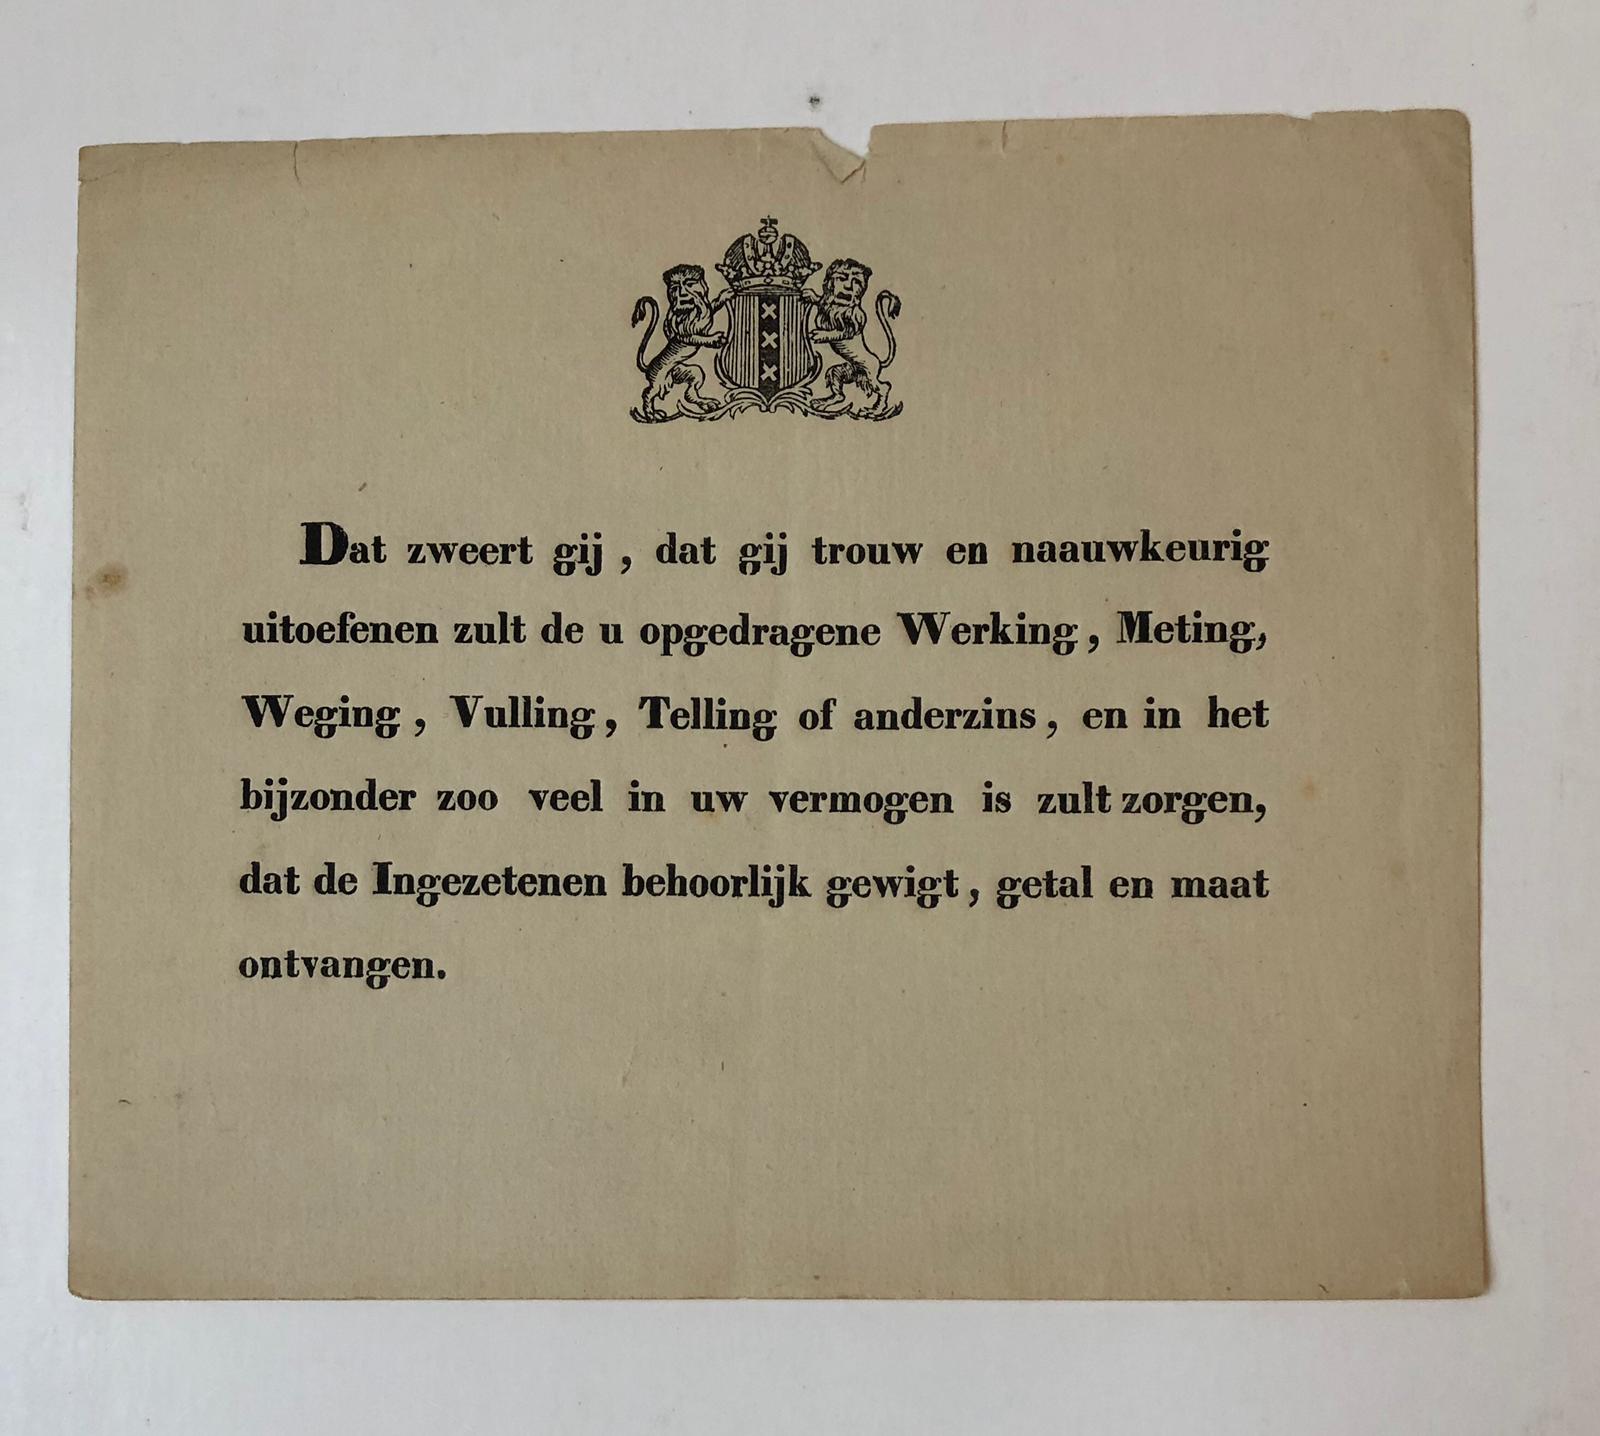  - AMSTERDAM, YKMEESTER Eed voor ykmeester te Amsterdam, gedrukt, 4 oblong, 1 p., 19e-eeuws.